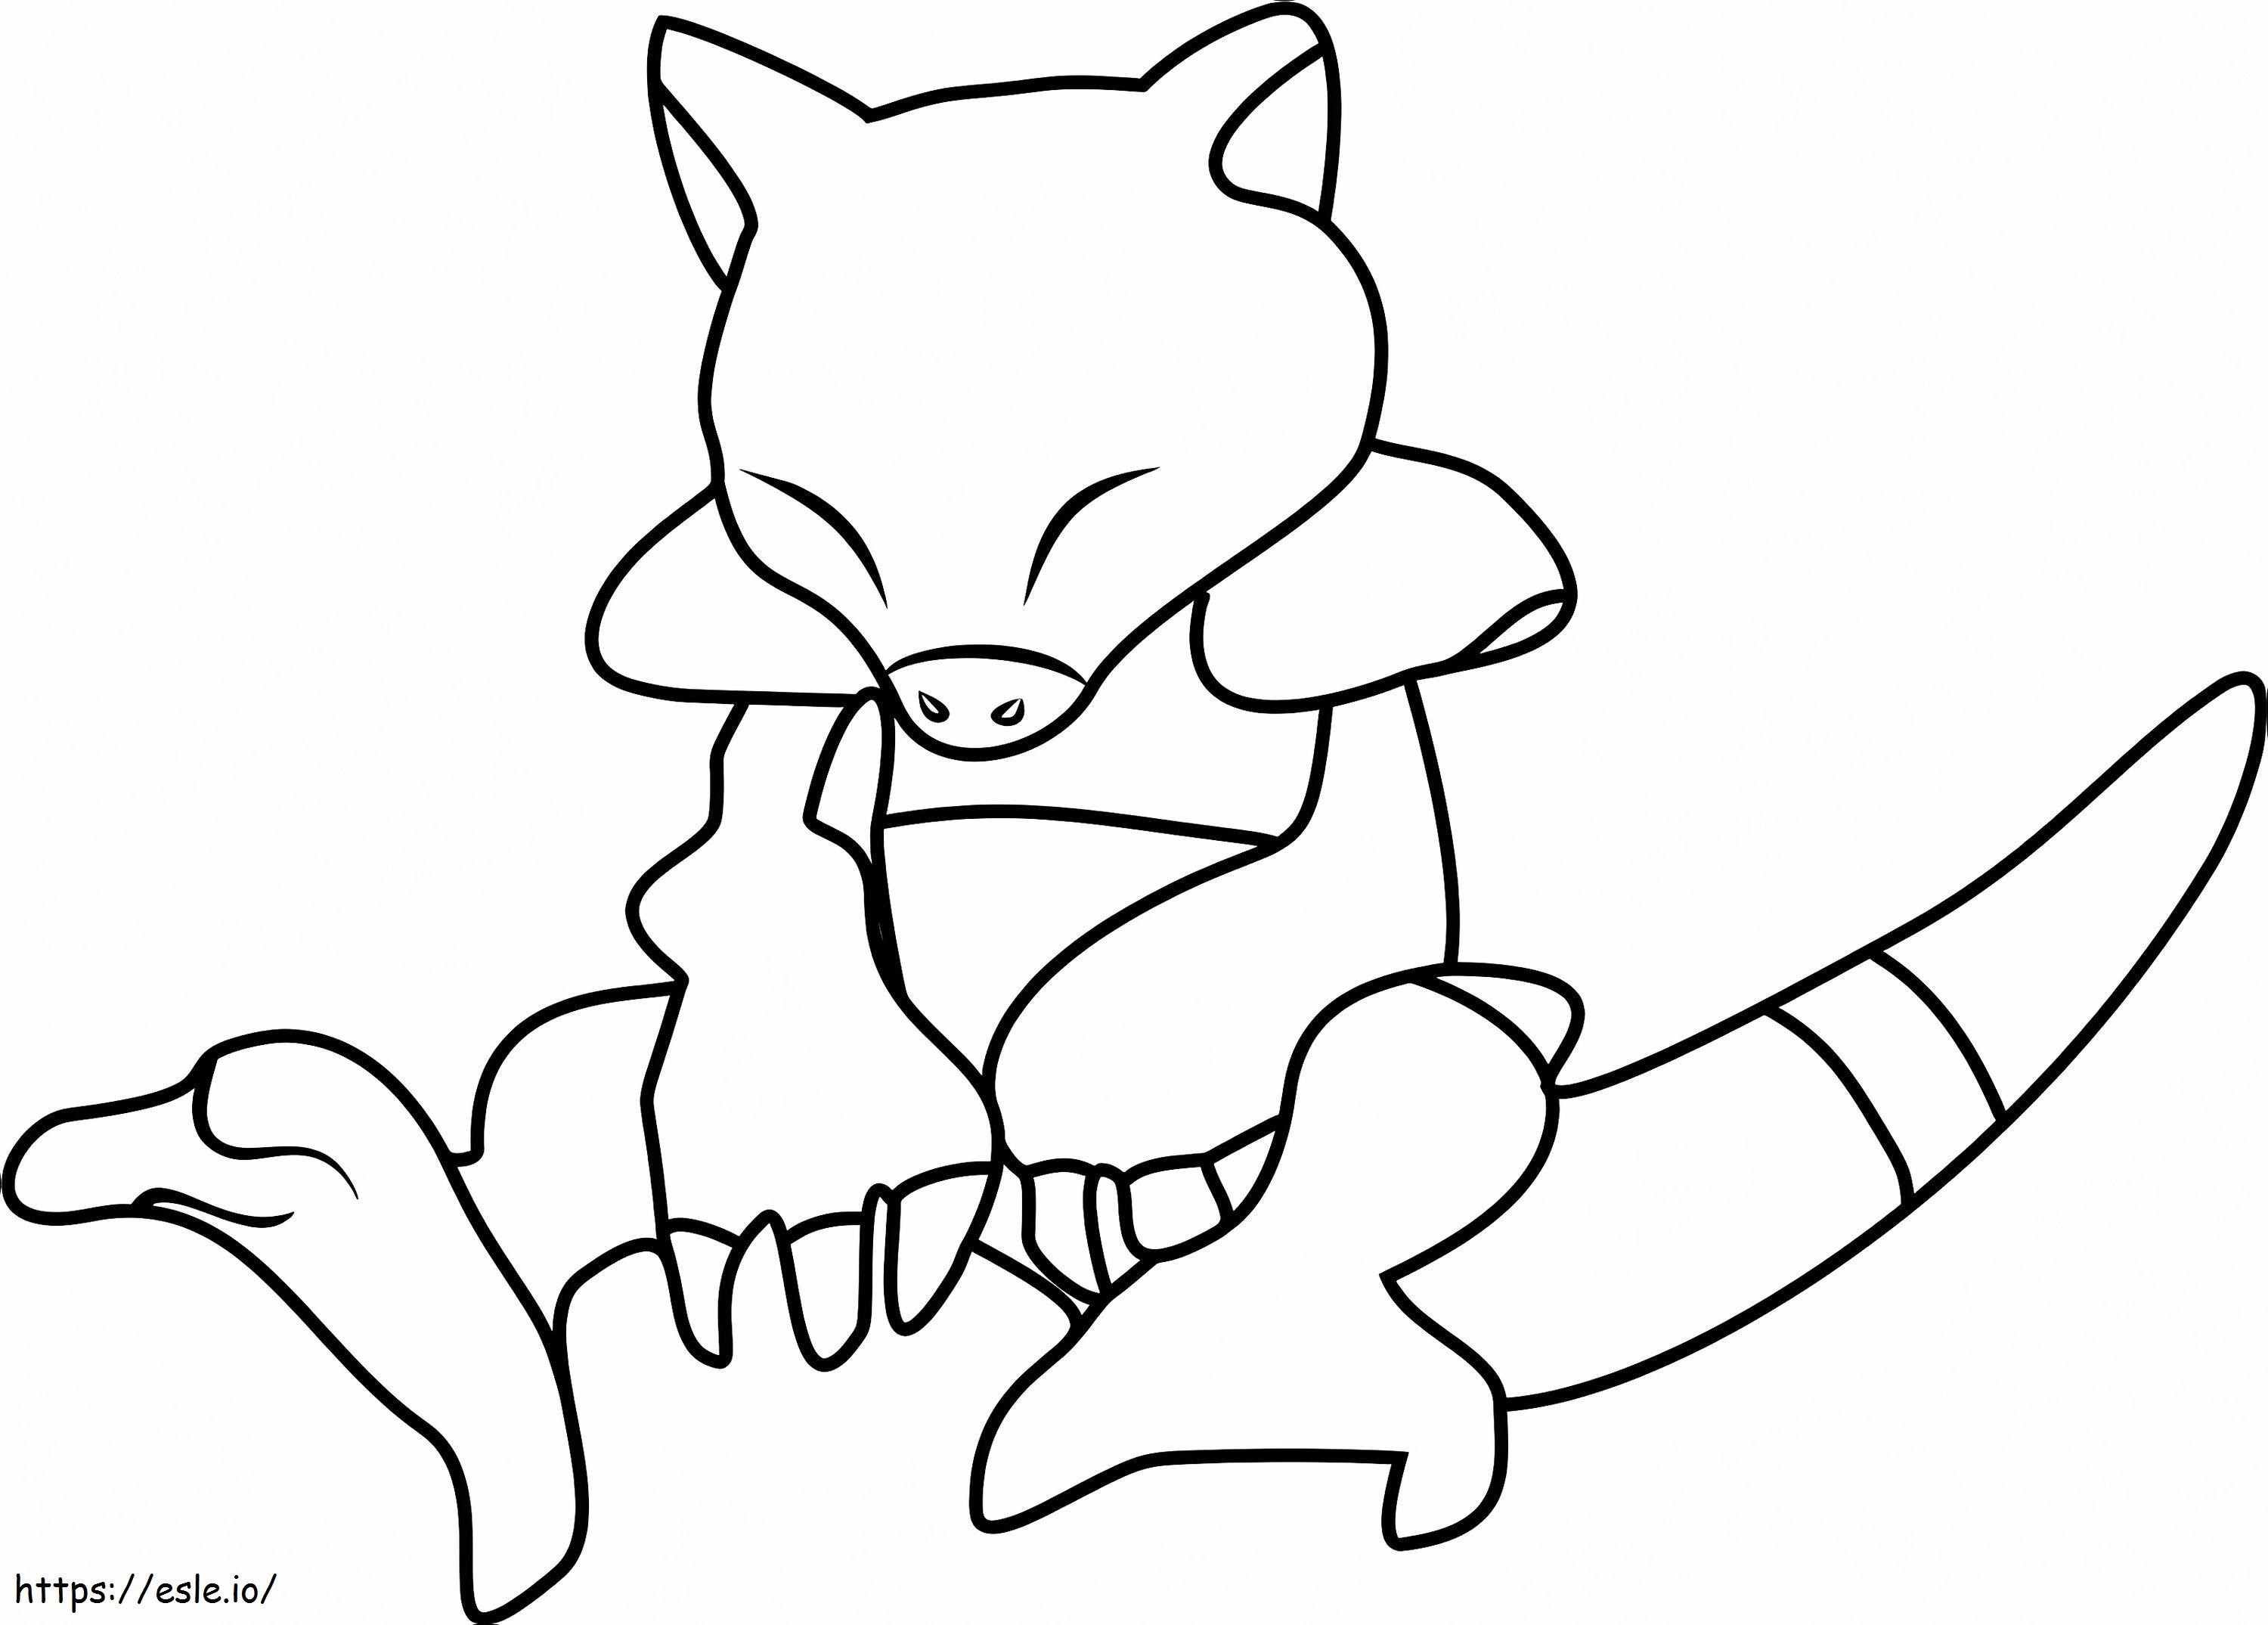 1530498559 Abra Pokemon Go1 coloring page